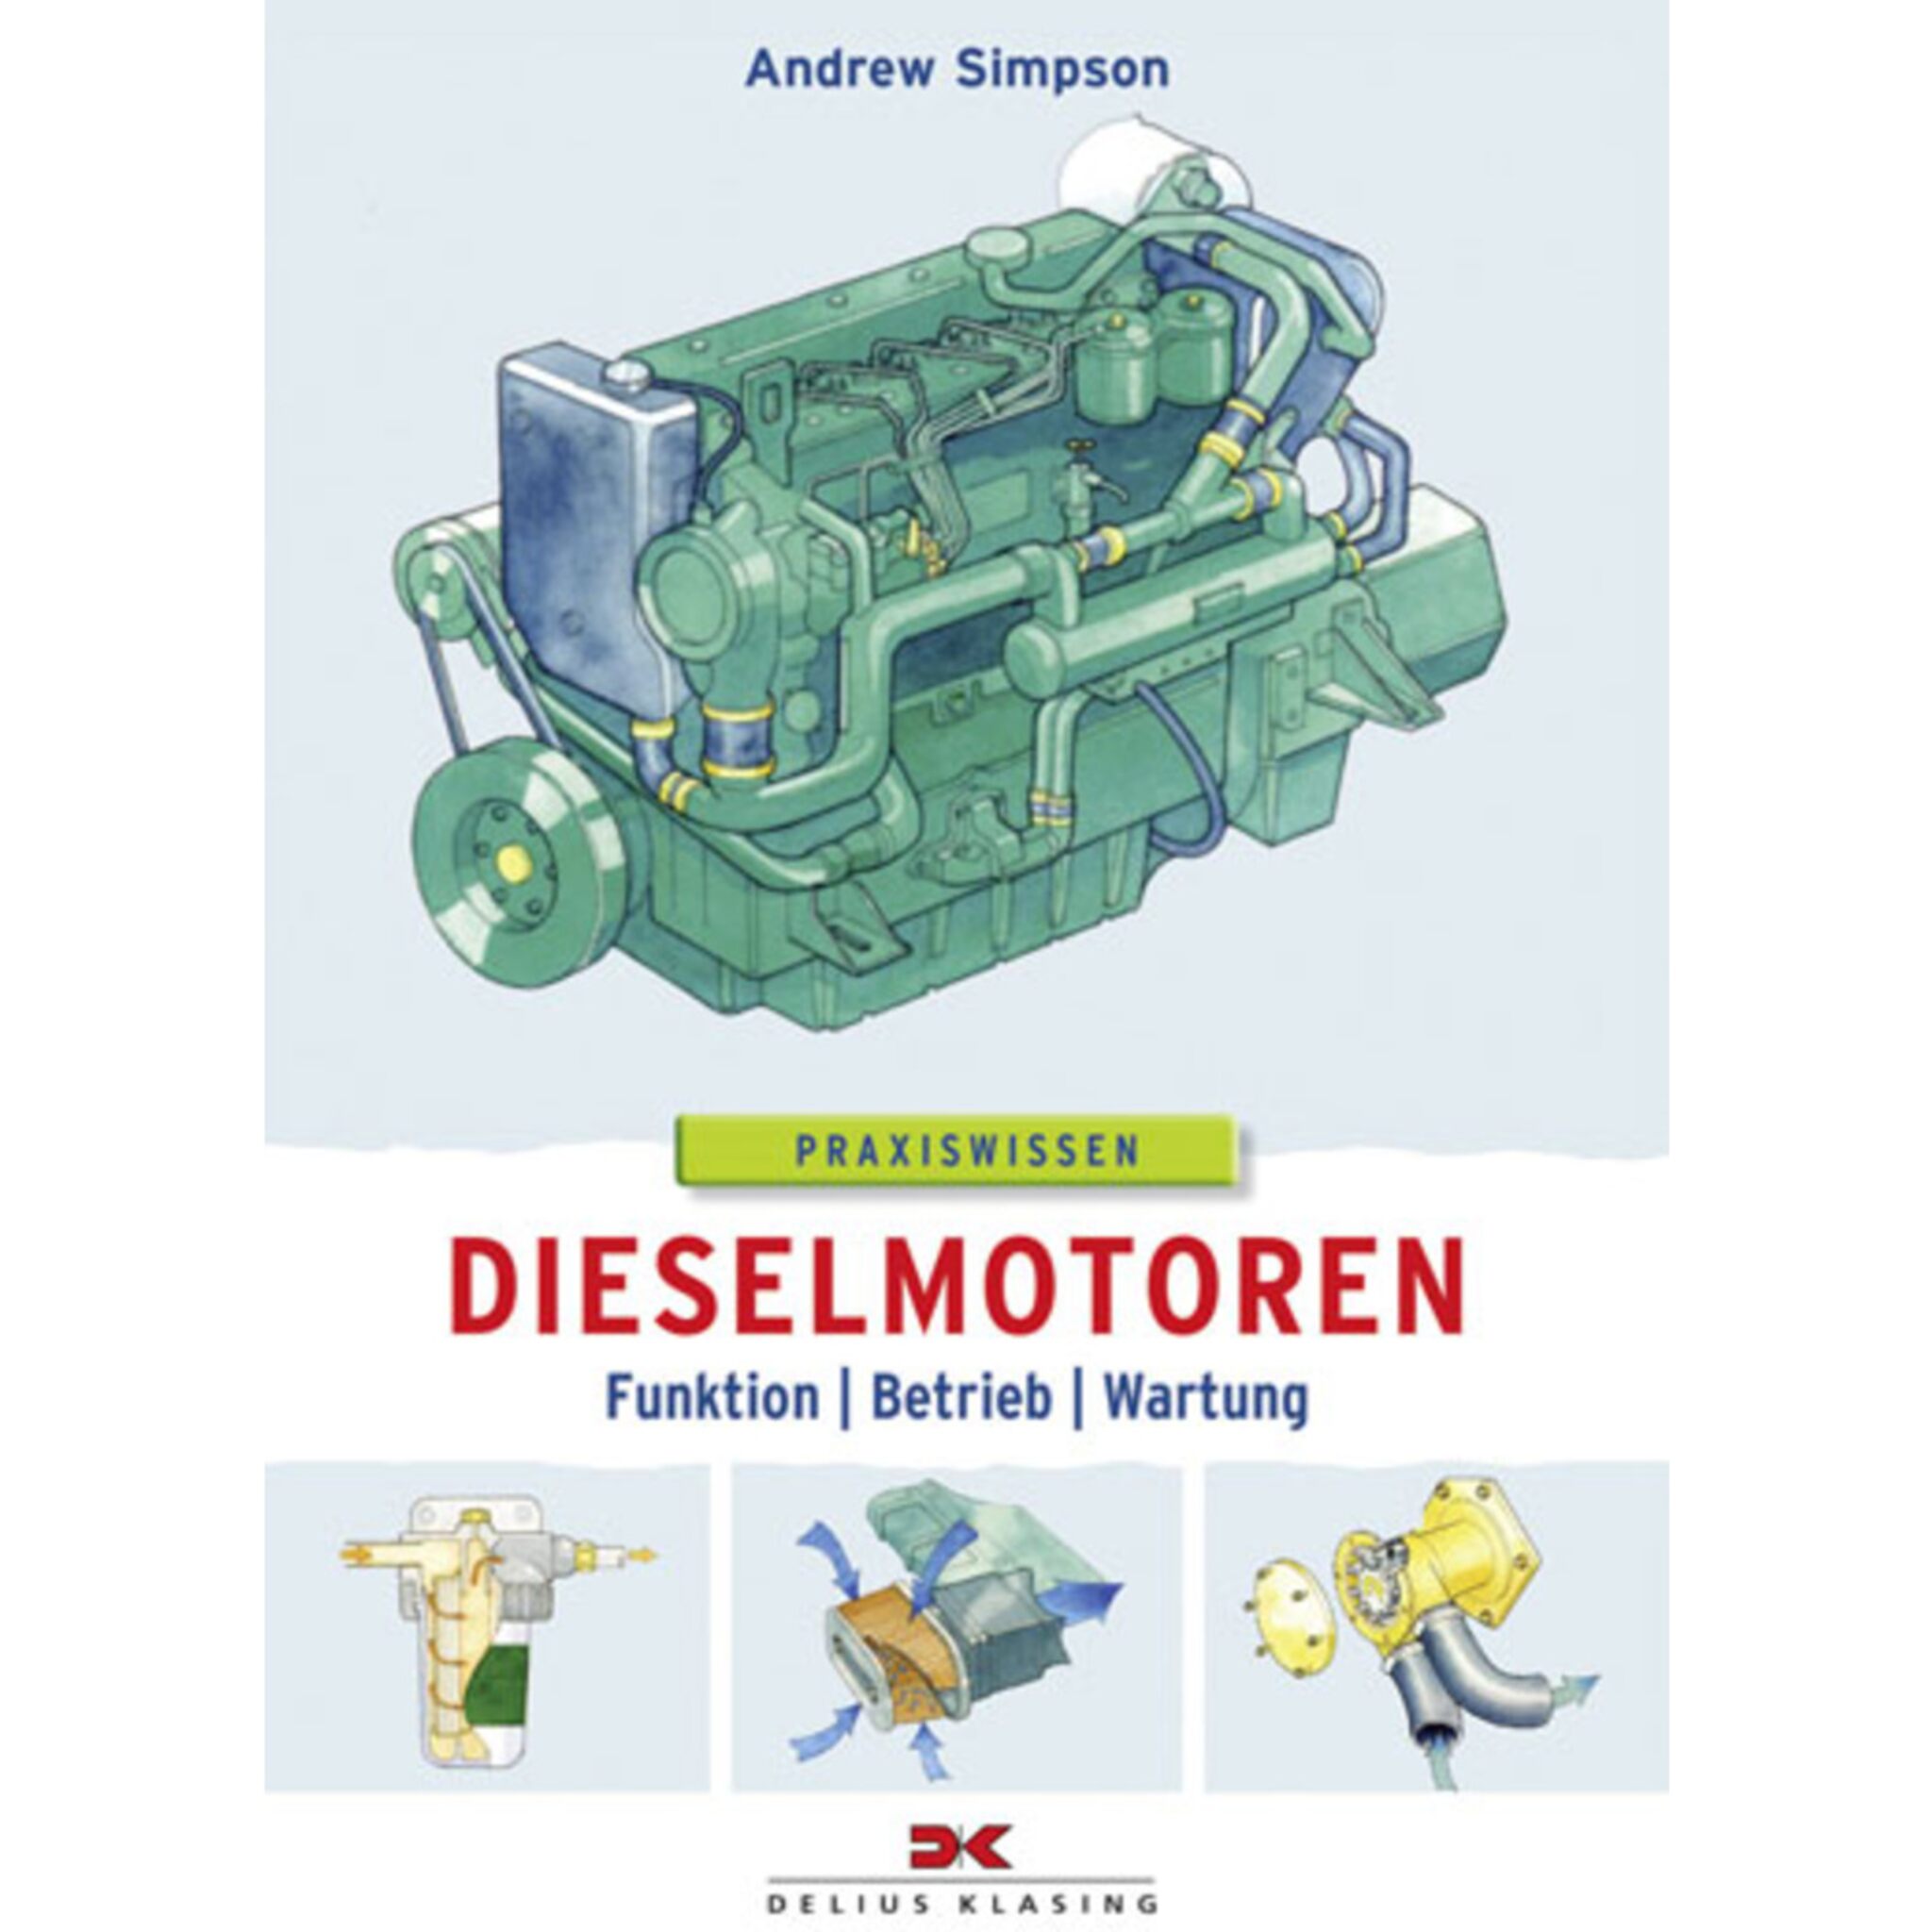 Praxiswissen Dieselmotoren - Andrew Simpson